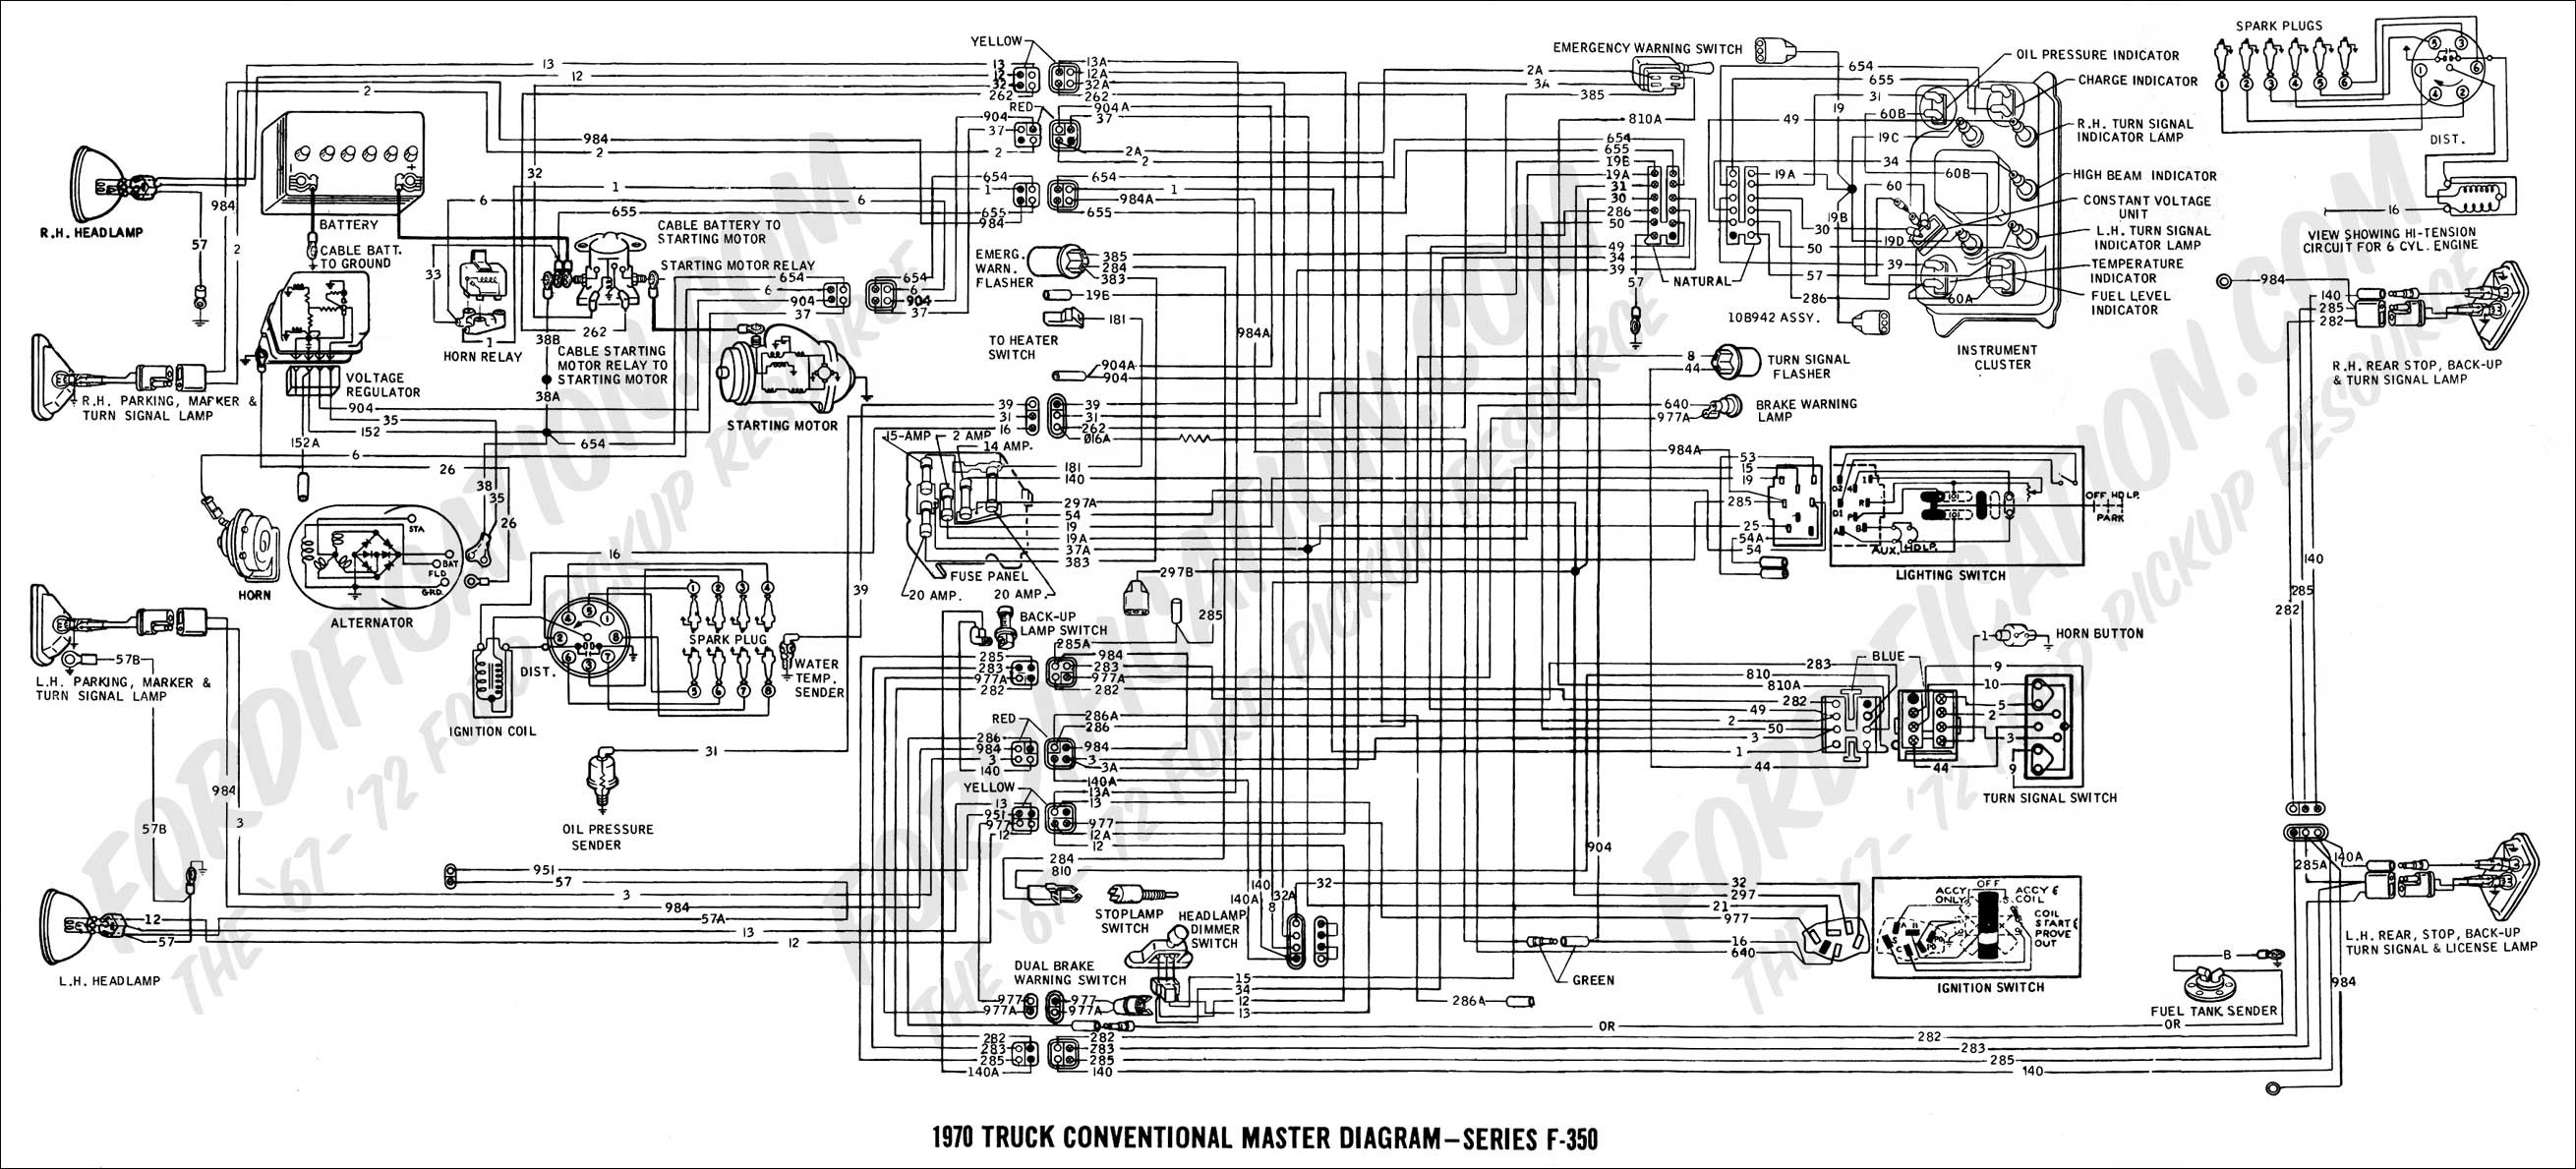 Ford E450 Wiring Diagram from detoxicrecenze.com